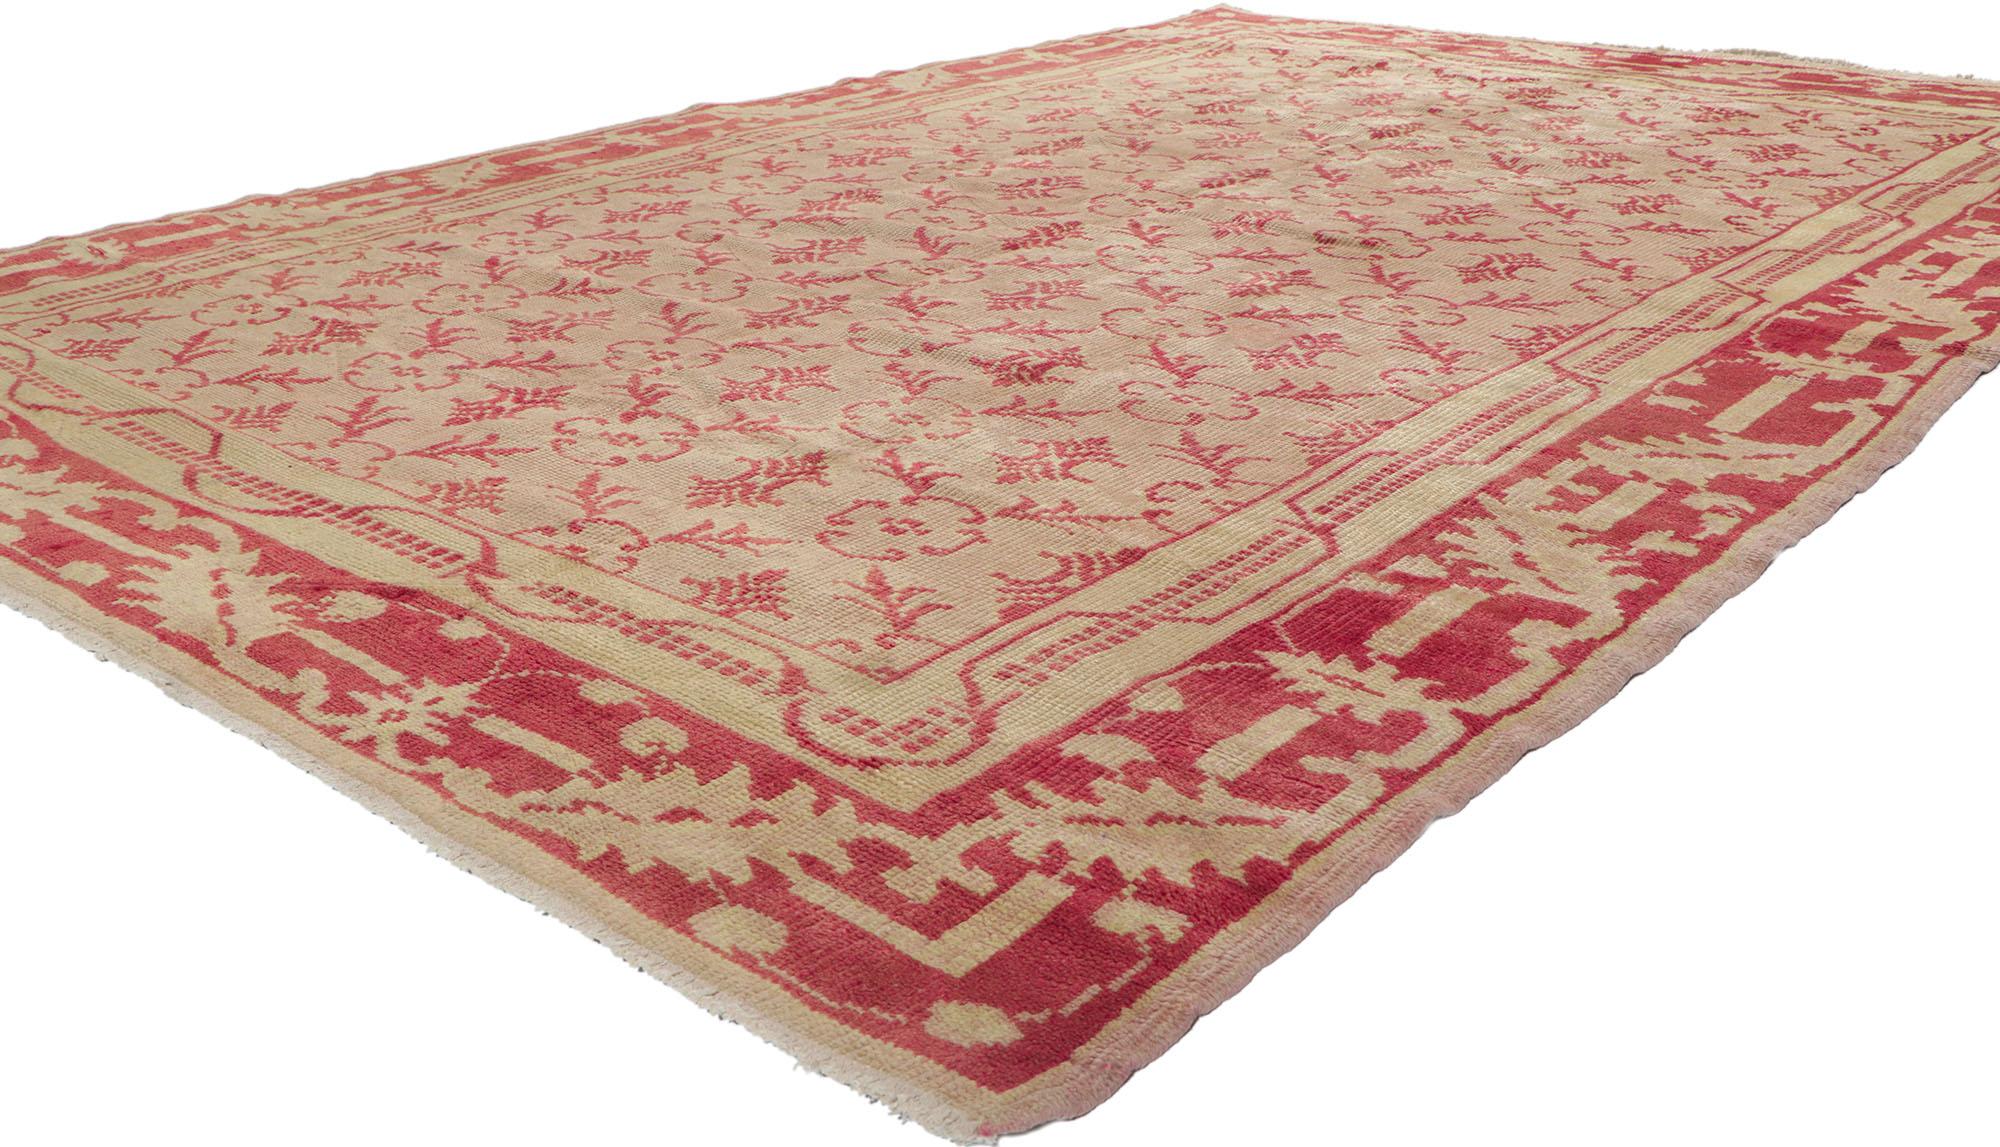 50342, tapis vintage turc Oushak avec bordure en treillis et feuilles, style traditionnel. Ce tapis turc Oushak vintage en laine nouée à la main présente un motif floral en treillis rouge sur un fond rose clair abrasé. Des fleurs abstraites rouges